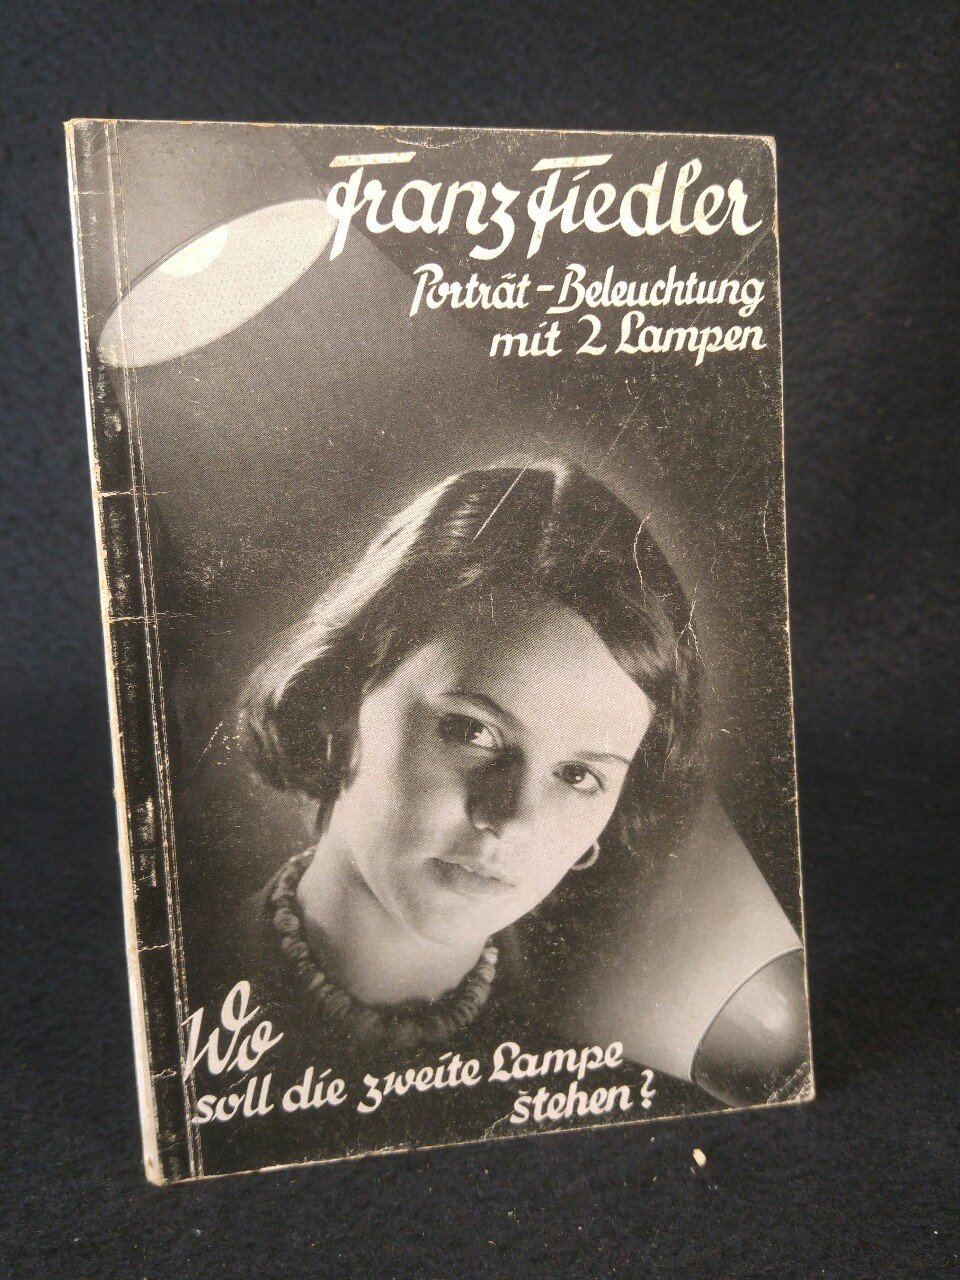 Die Porträt-Beleuchtung mit zwei Lampen.“ (Franz Fiedler) – Buch  antiquarisch kaufen – A02Diq8G01ZZc